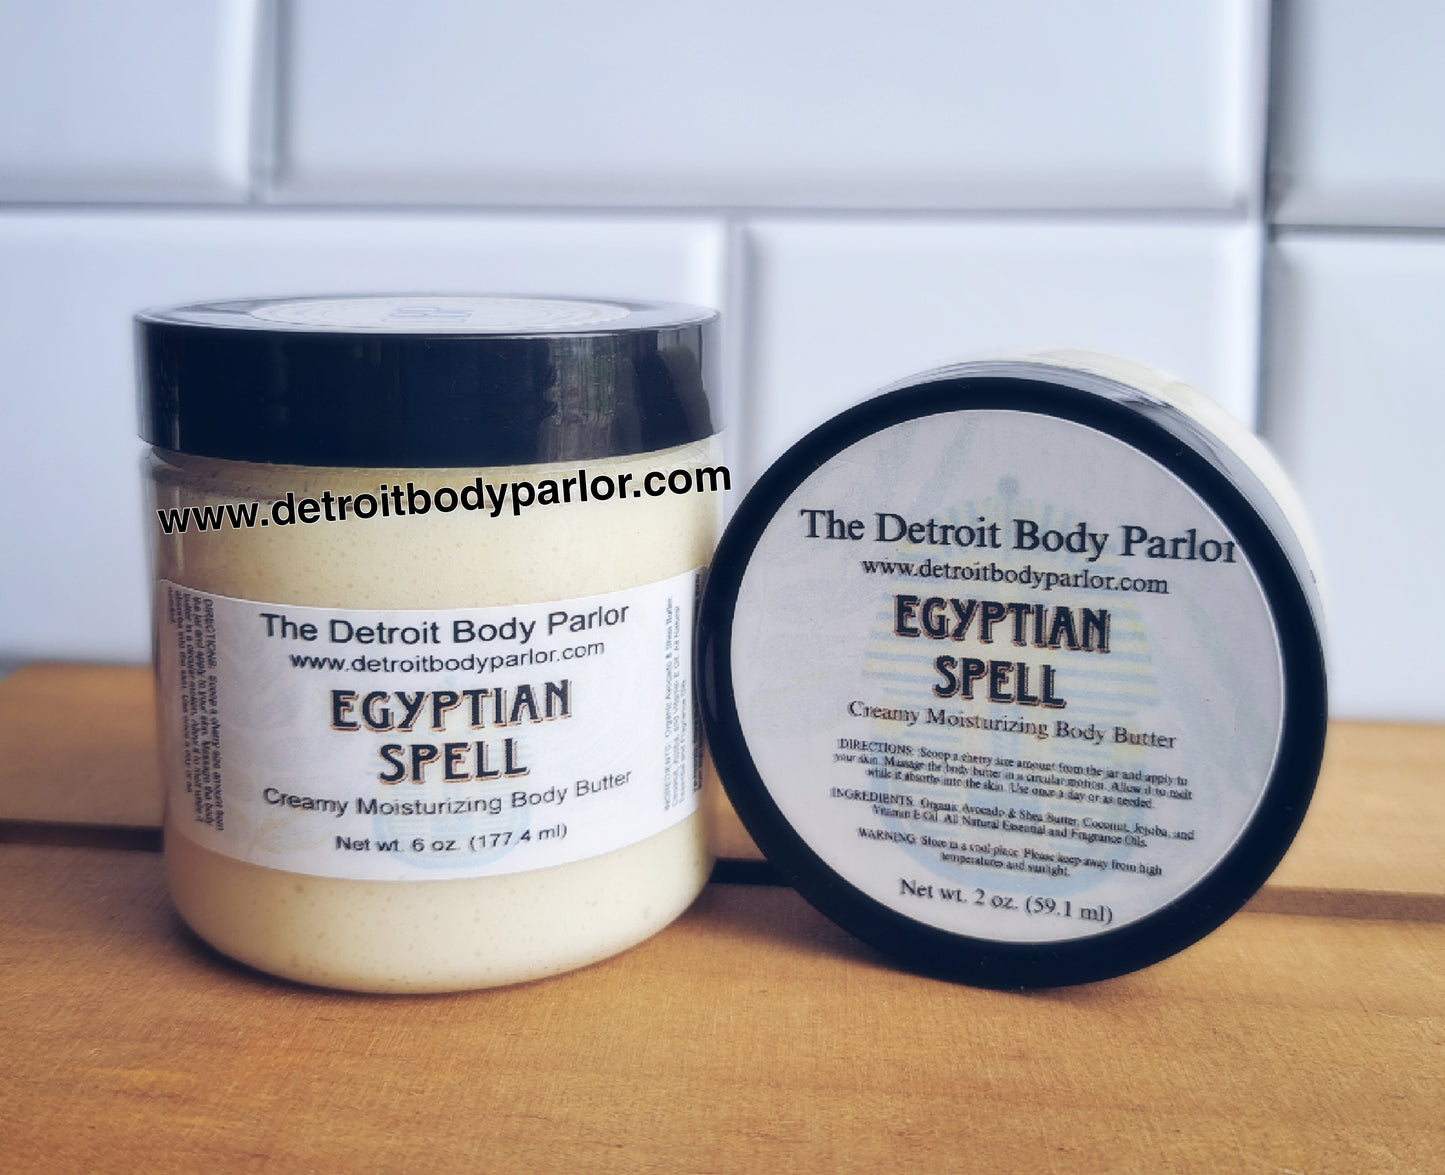 Egyptian Spell Whipped Body Butter